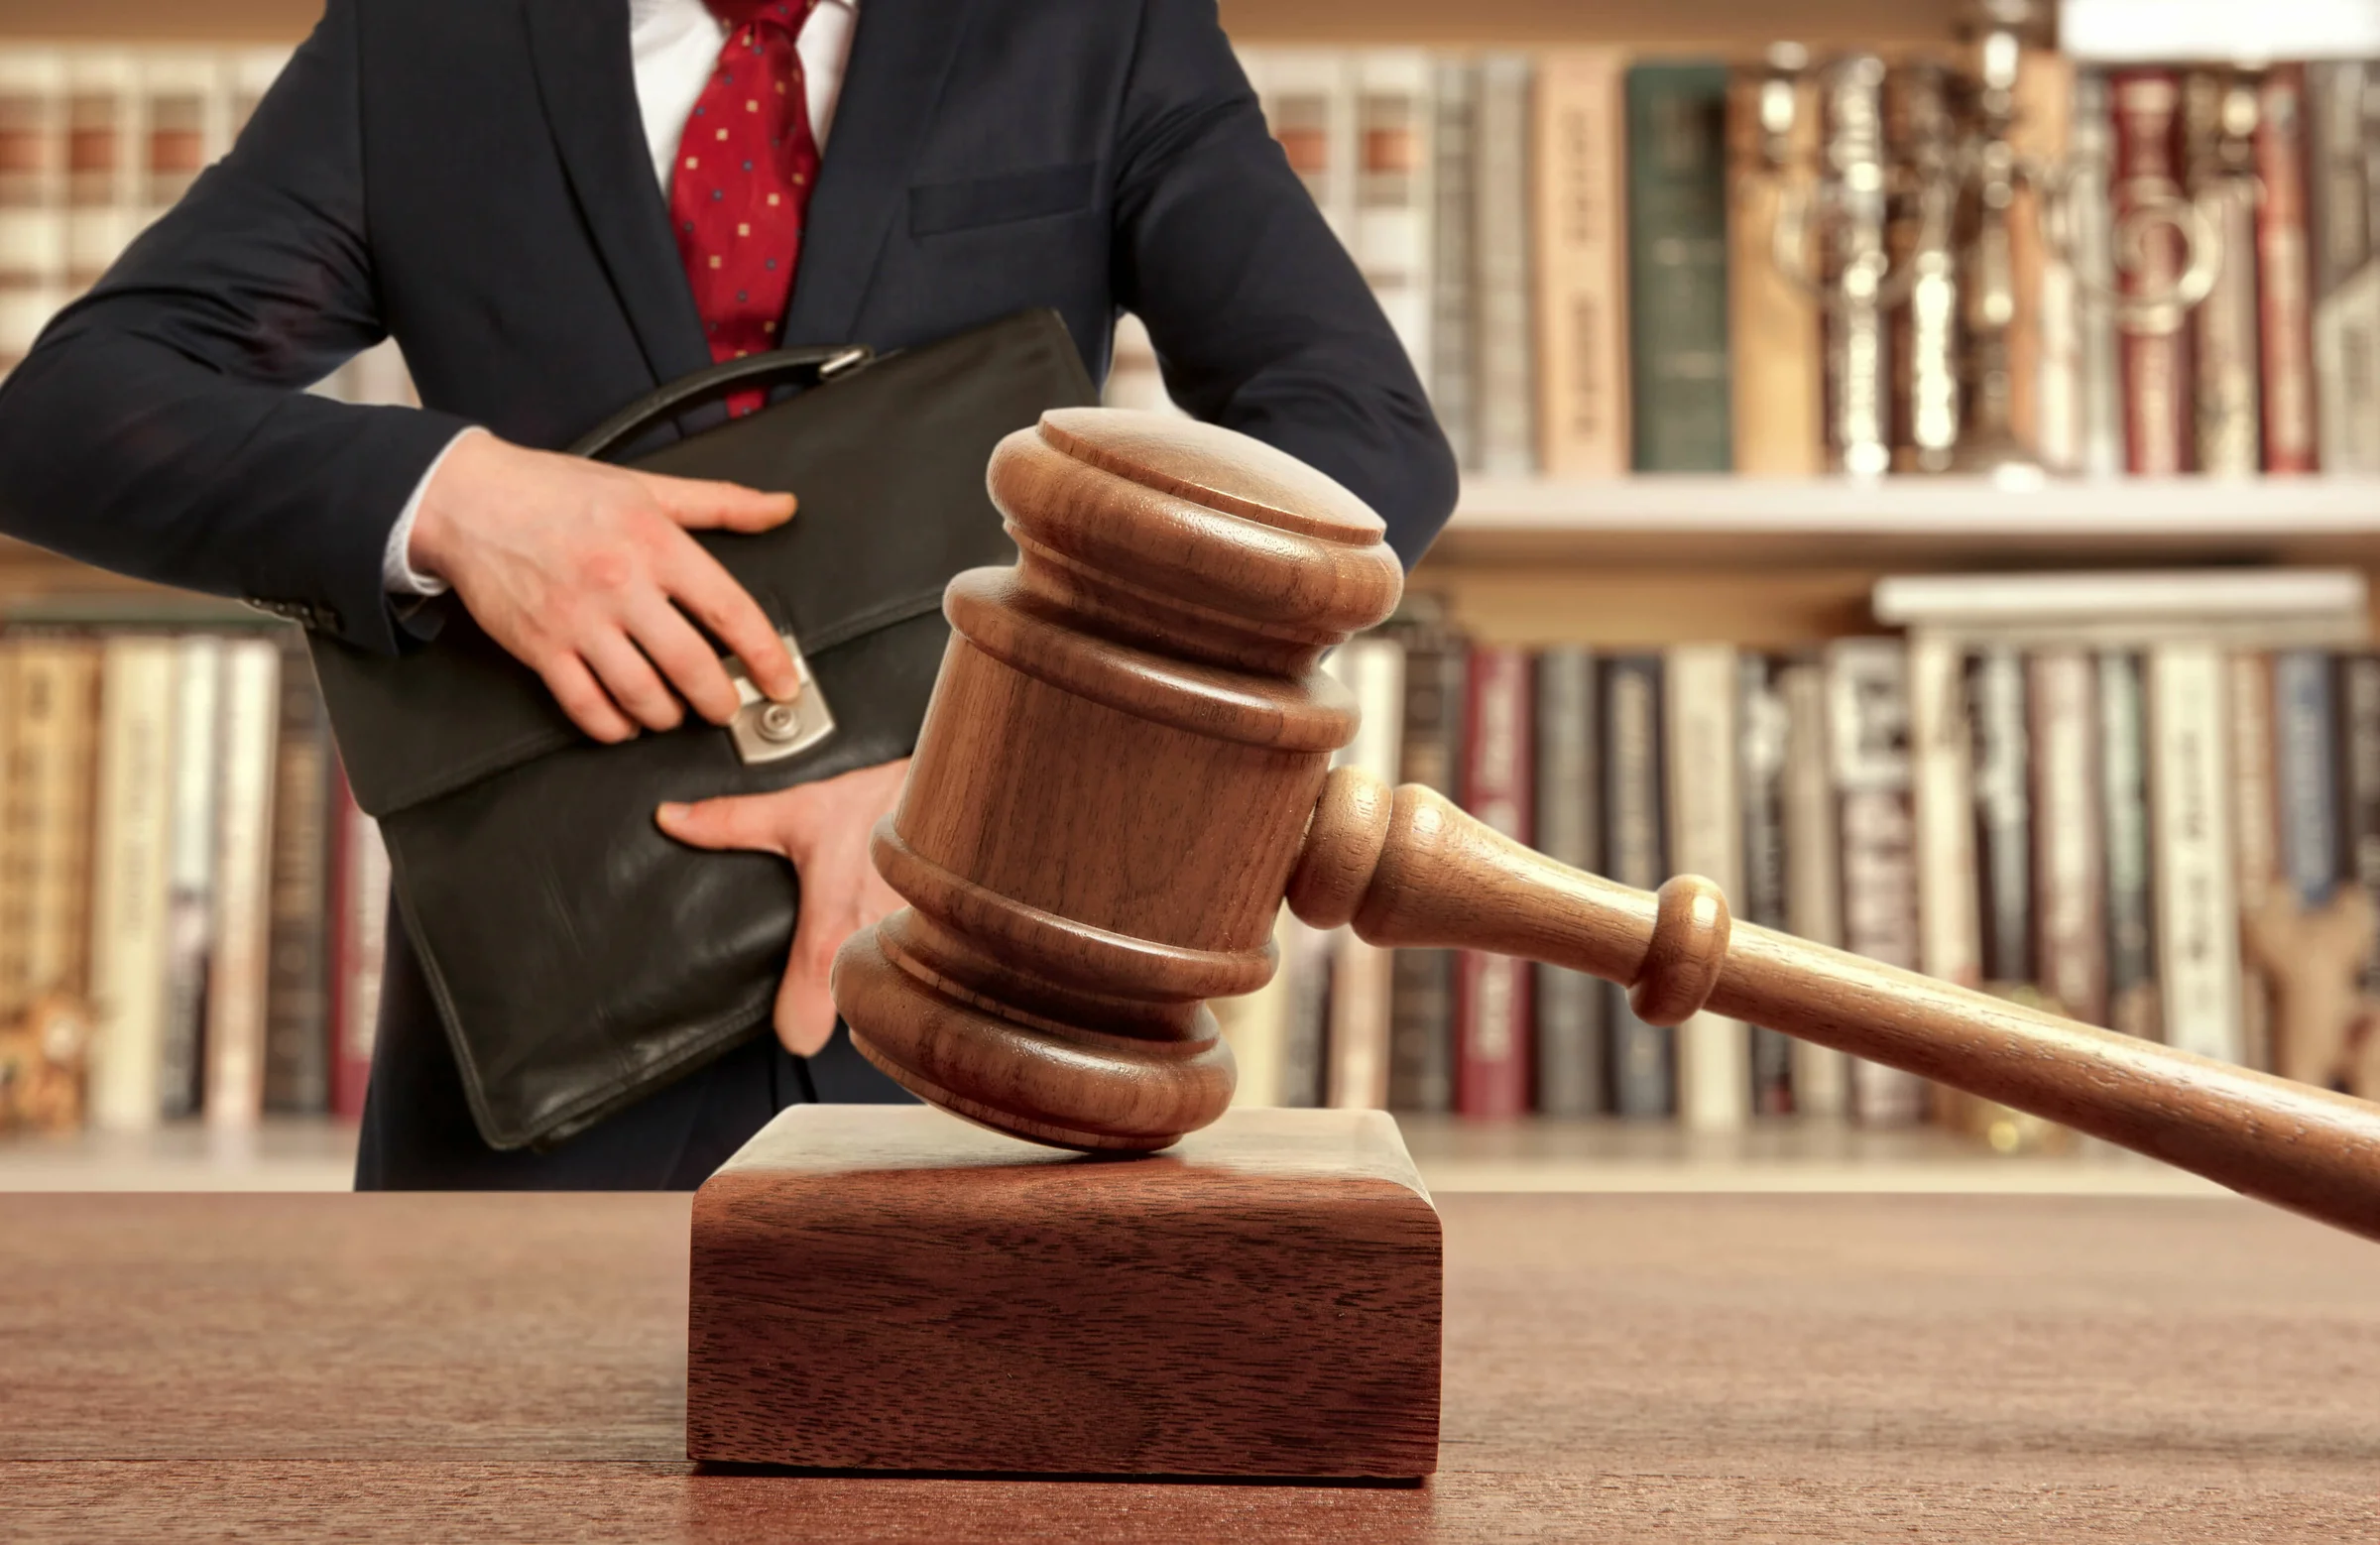 Адвокат, юрист, арбитражный управляющий — кто поможет потенциальному банкроту?